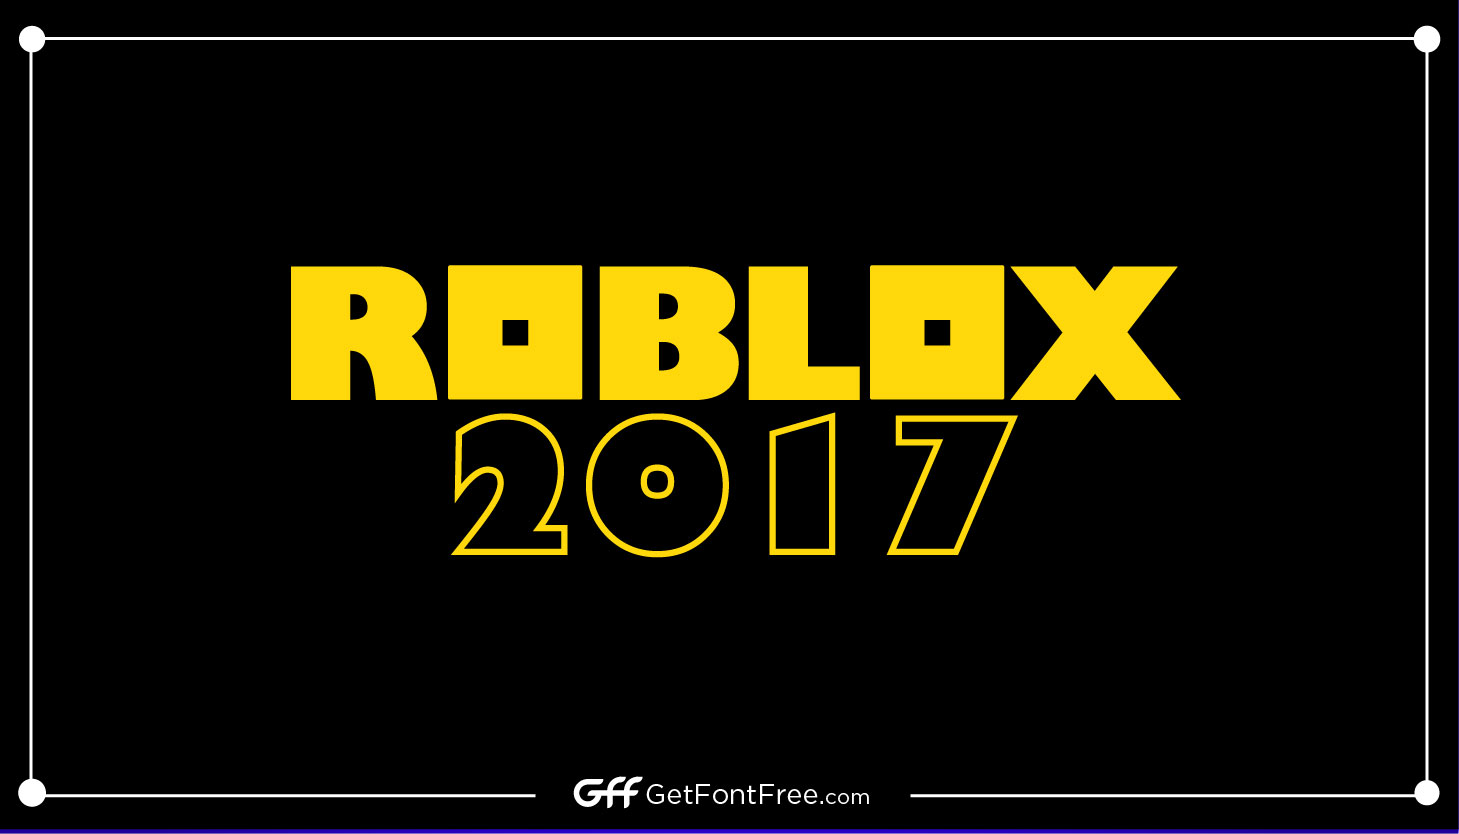 Roblox Font